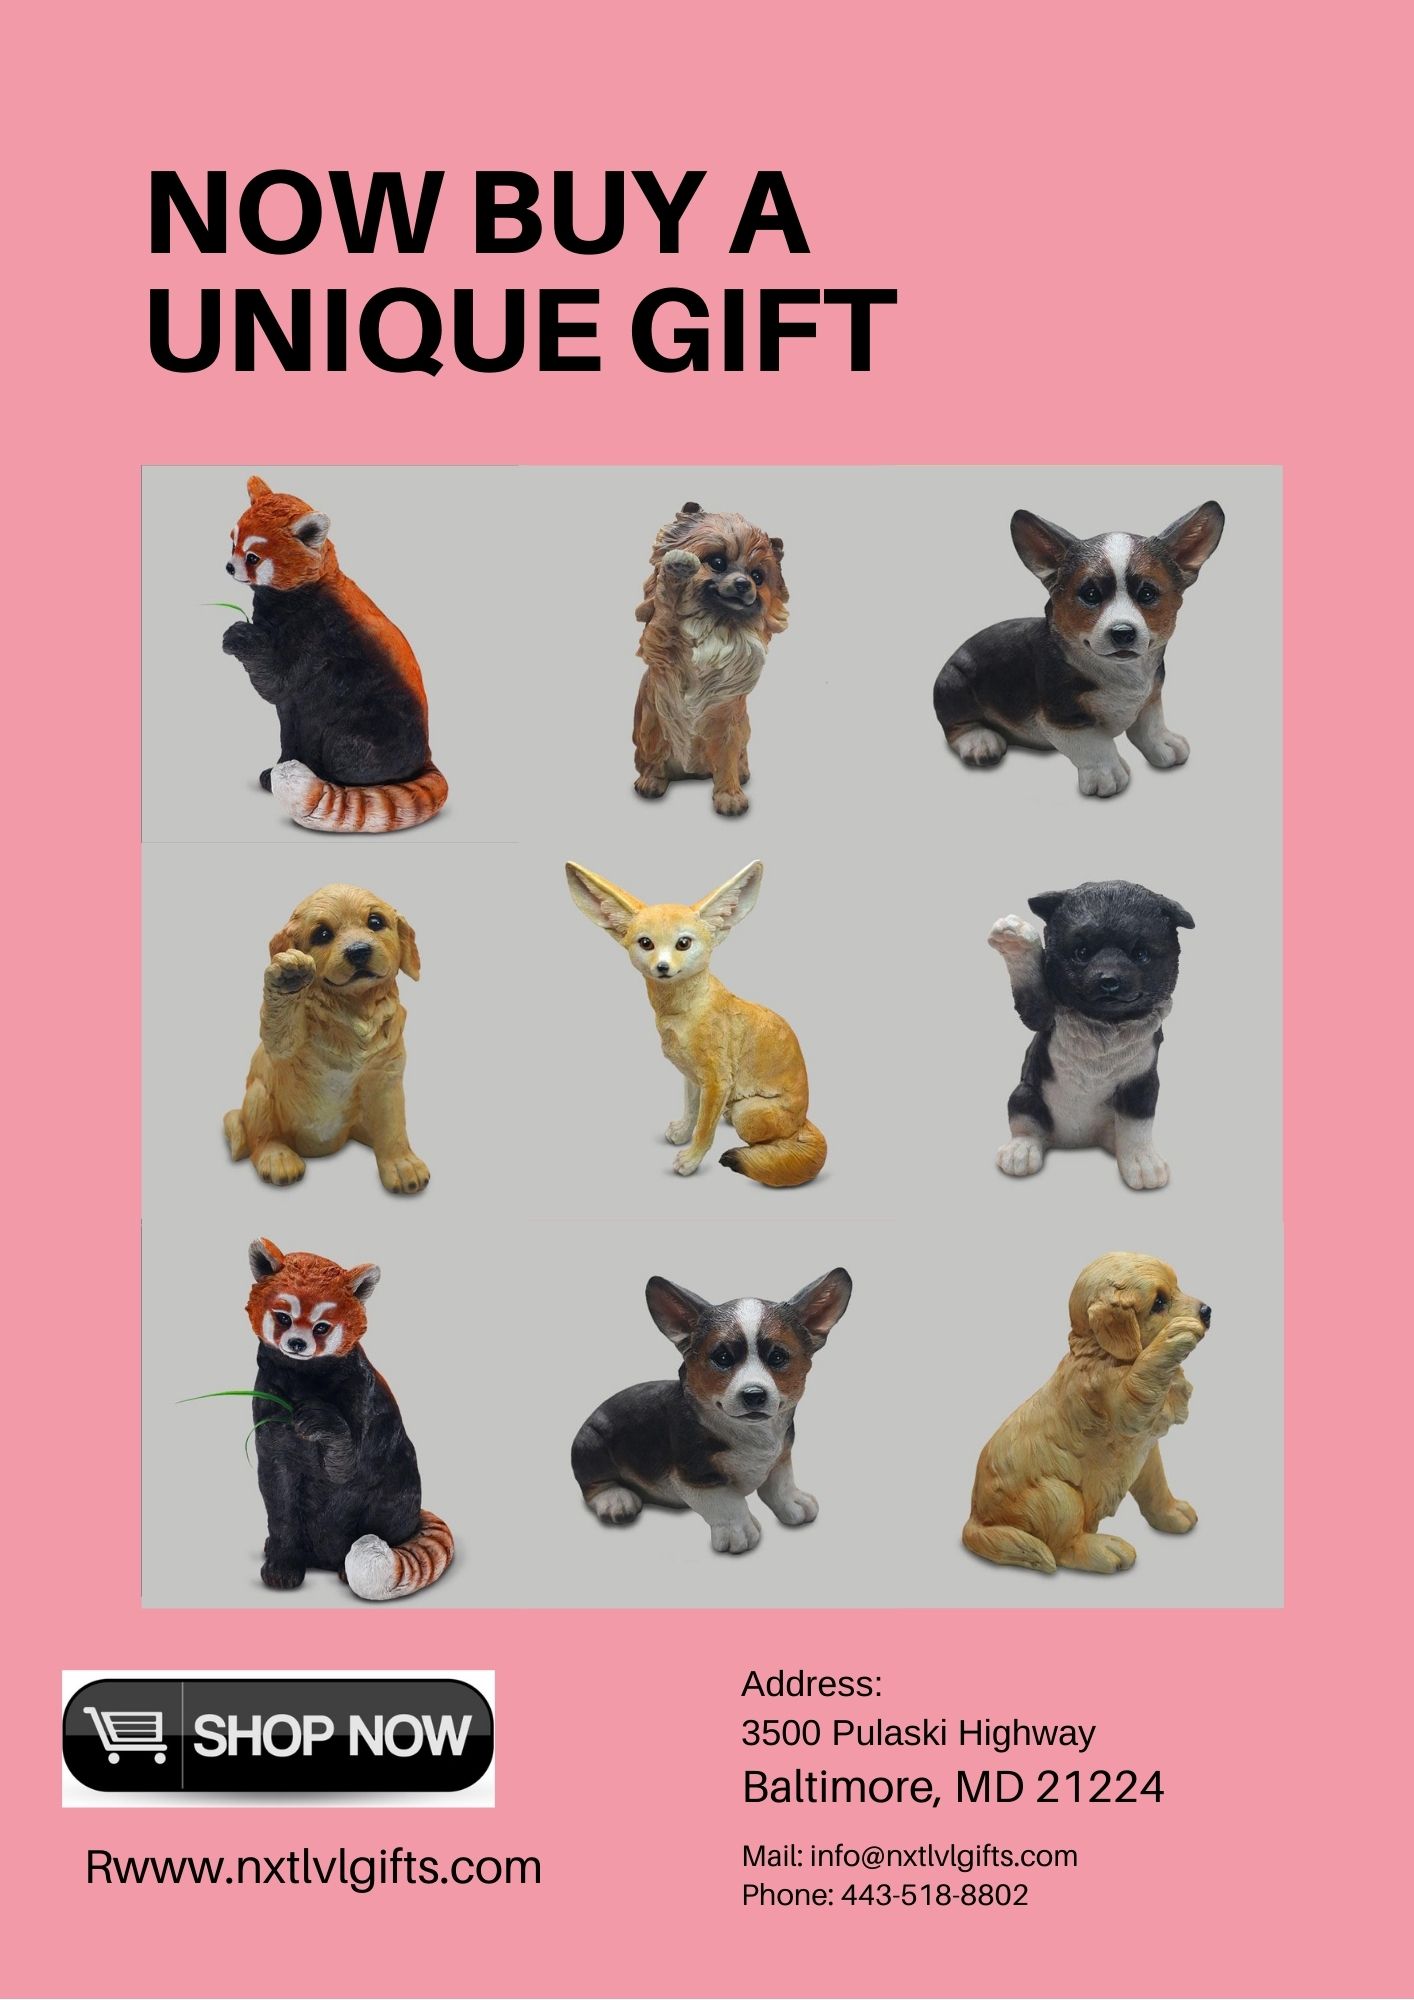 Now buy a unique gift (pets)